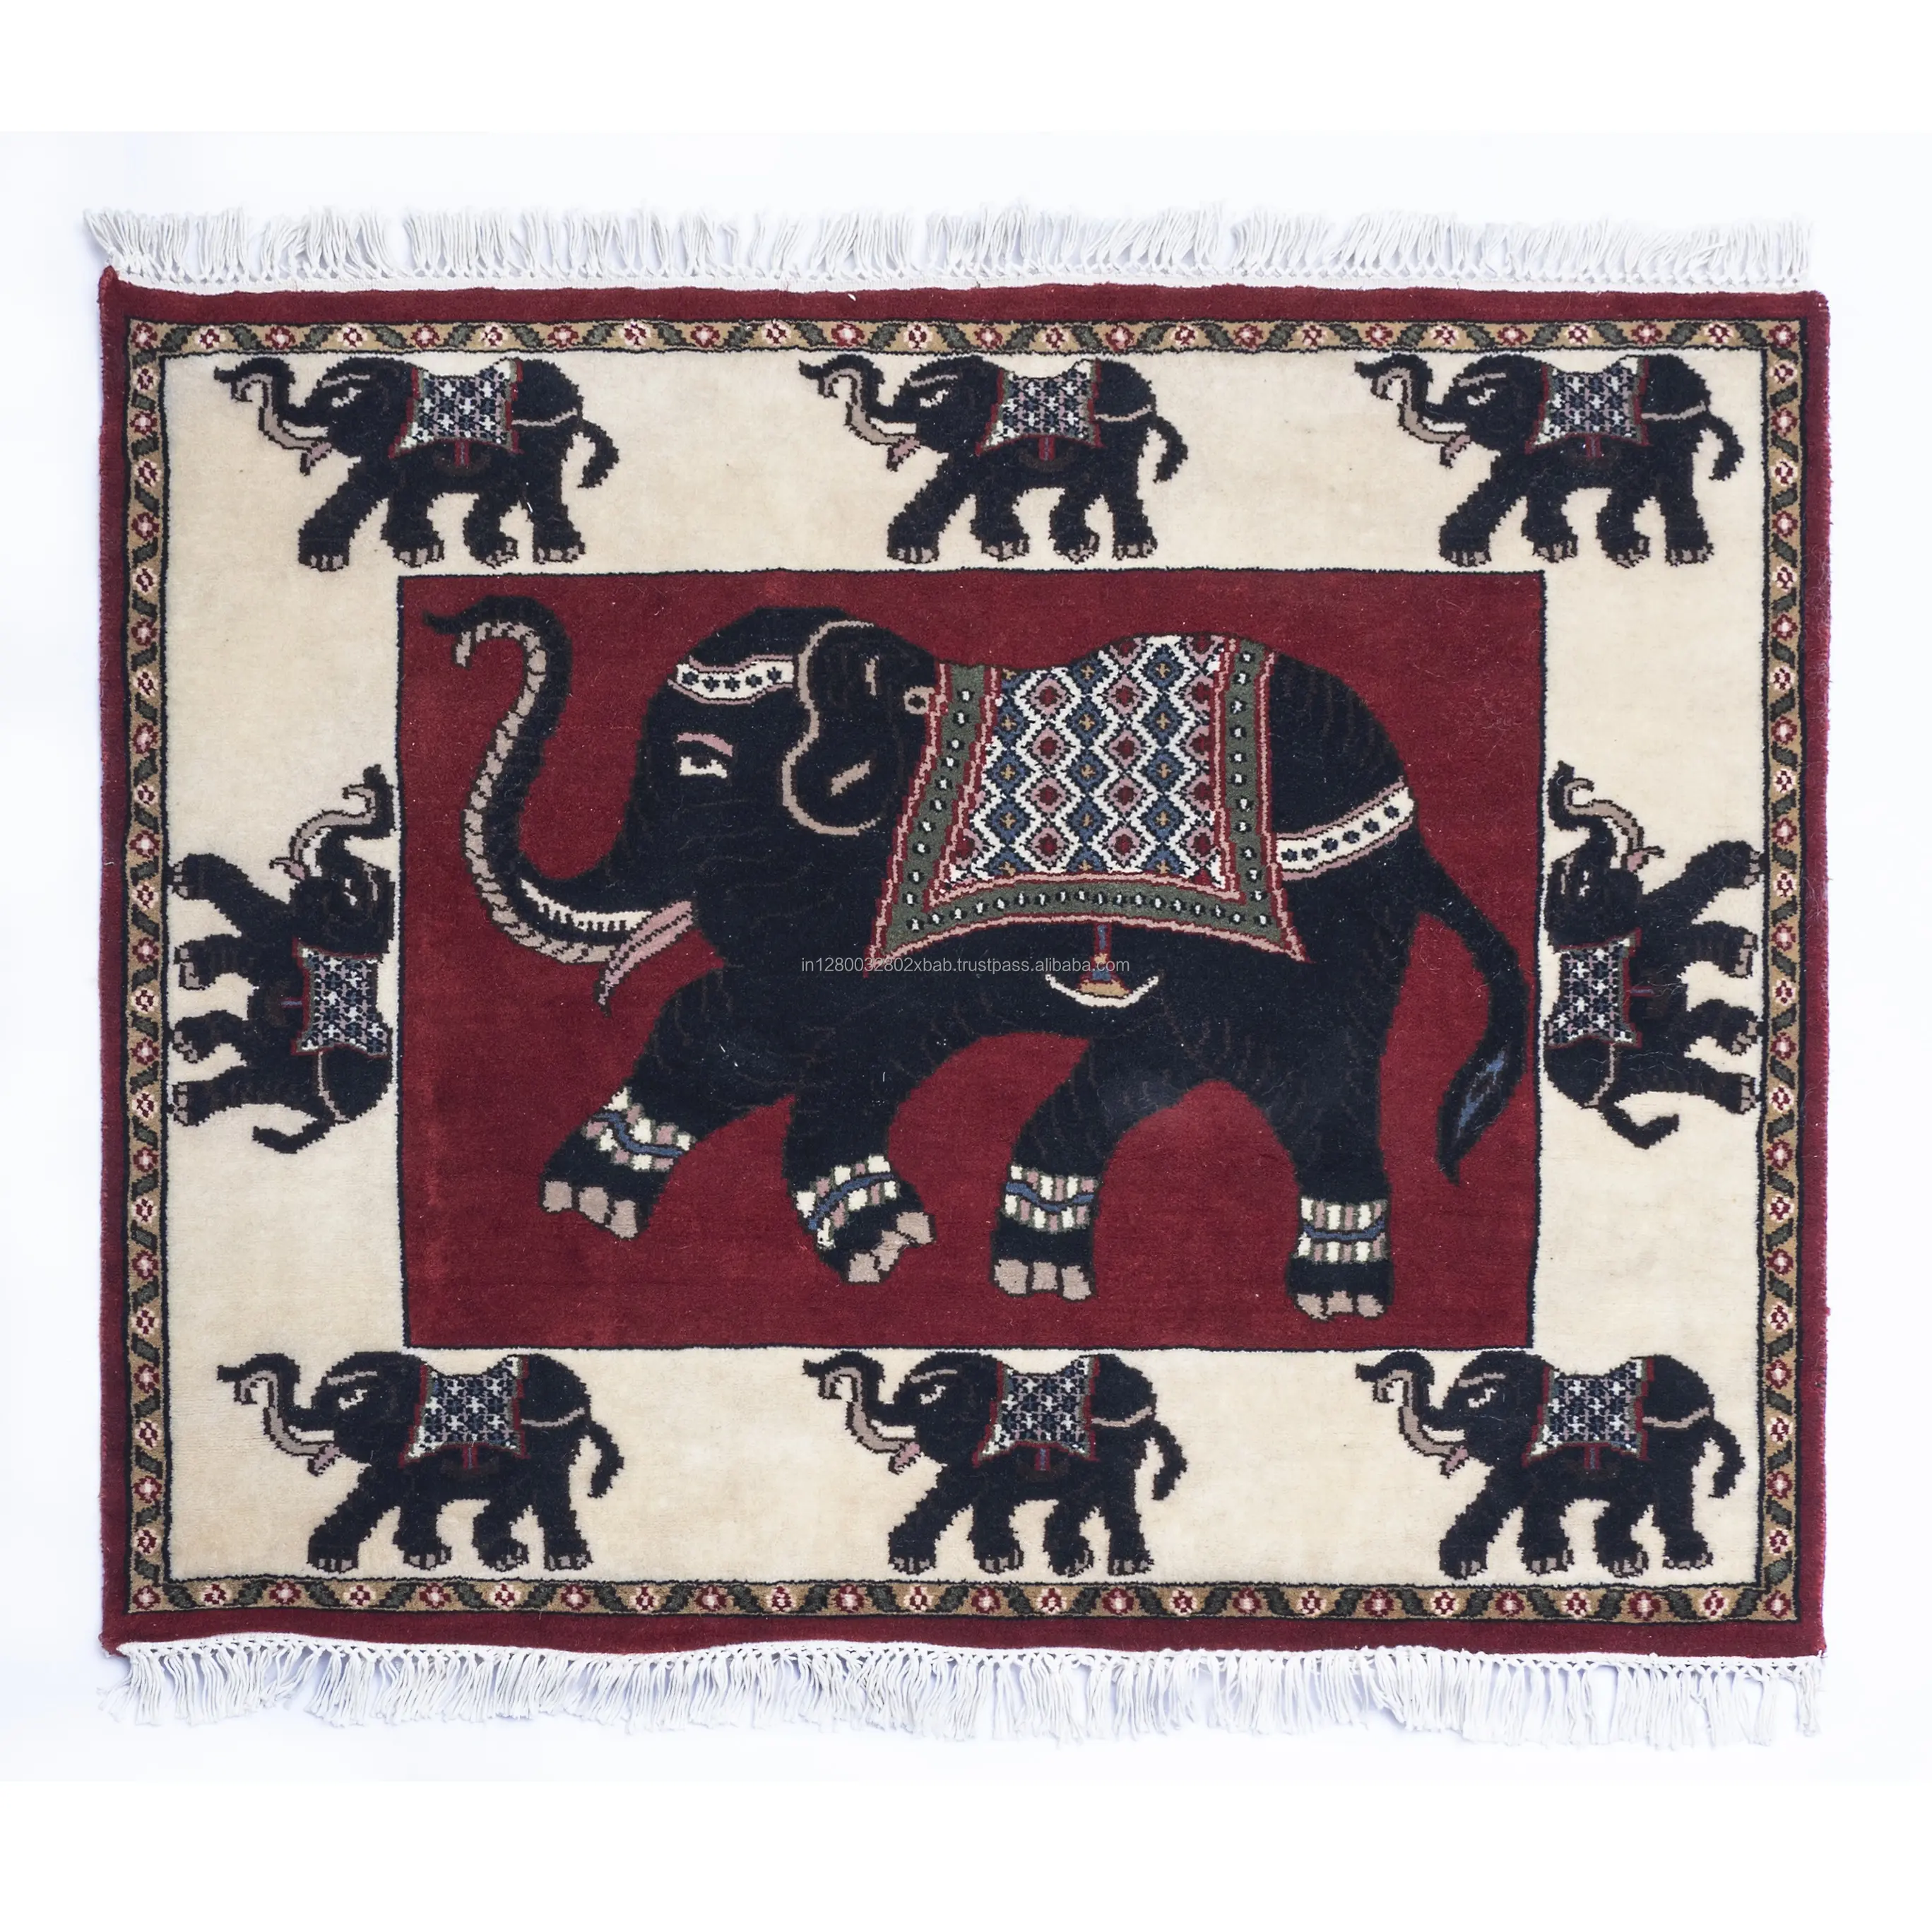 Tapetes de lã feitos à mão com desenho de elefante moderno de alta demanda do exportador e fabricante indiano bordados